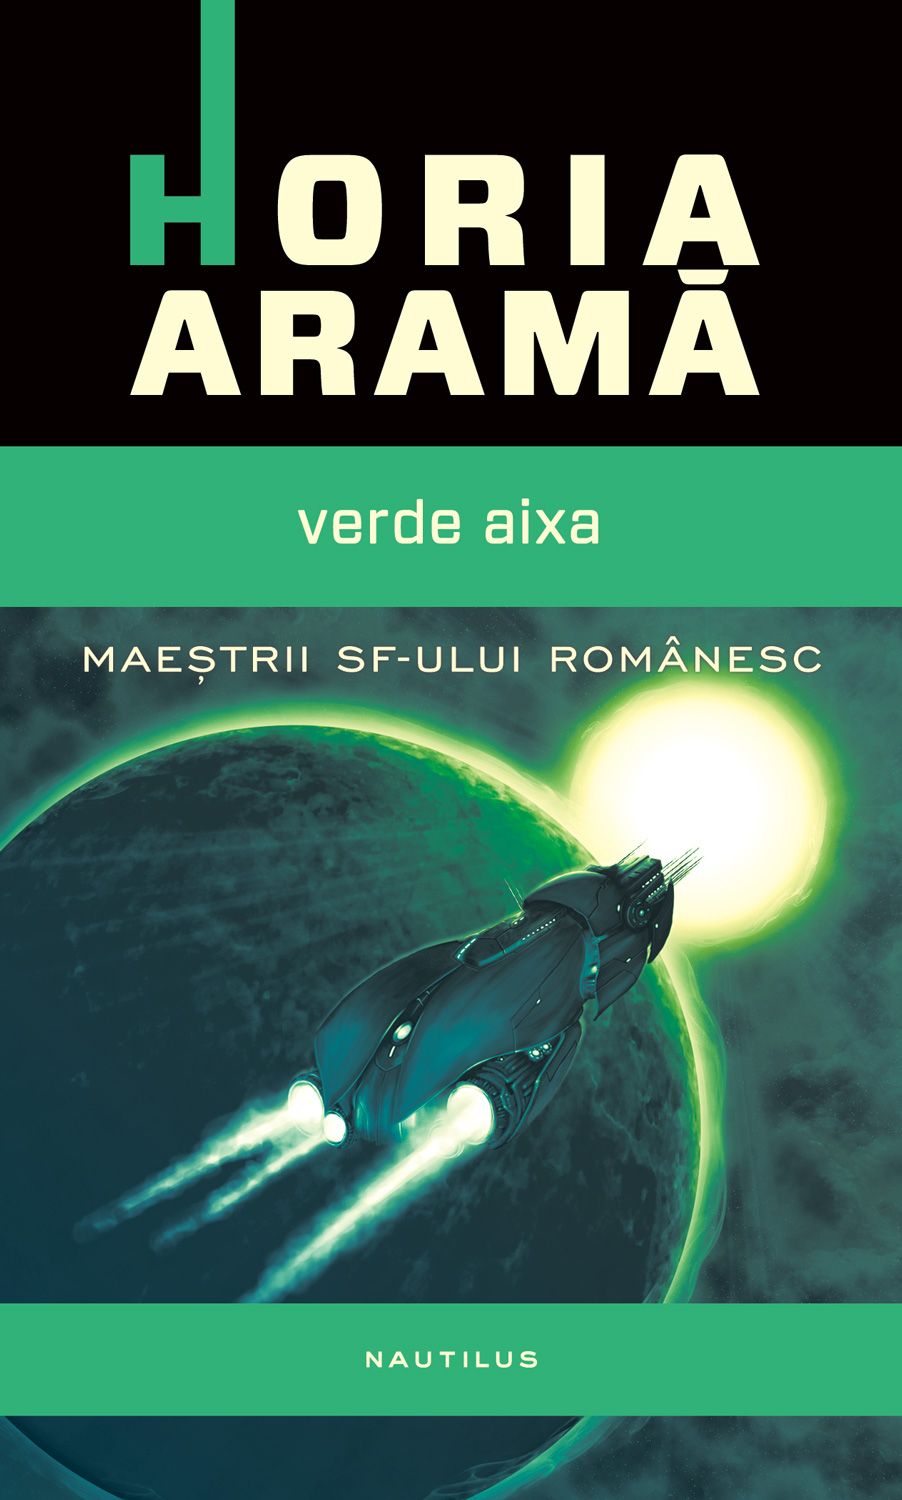 eBook Verde Aixa - Horia Arama